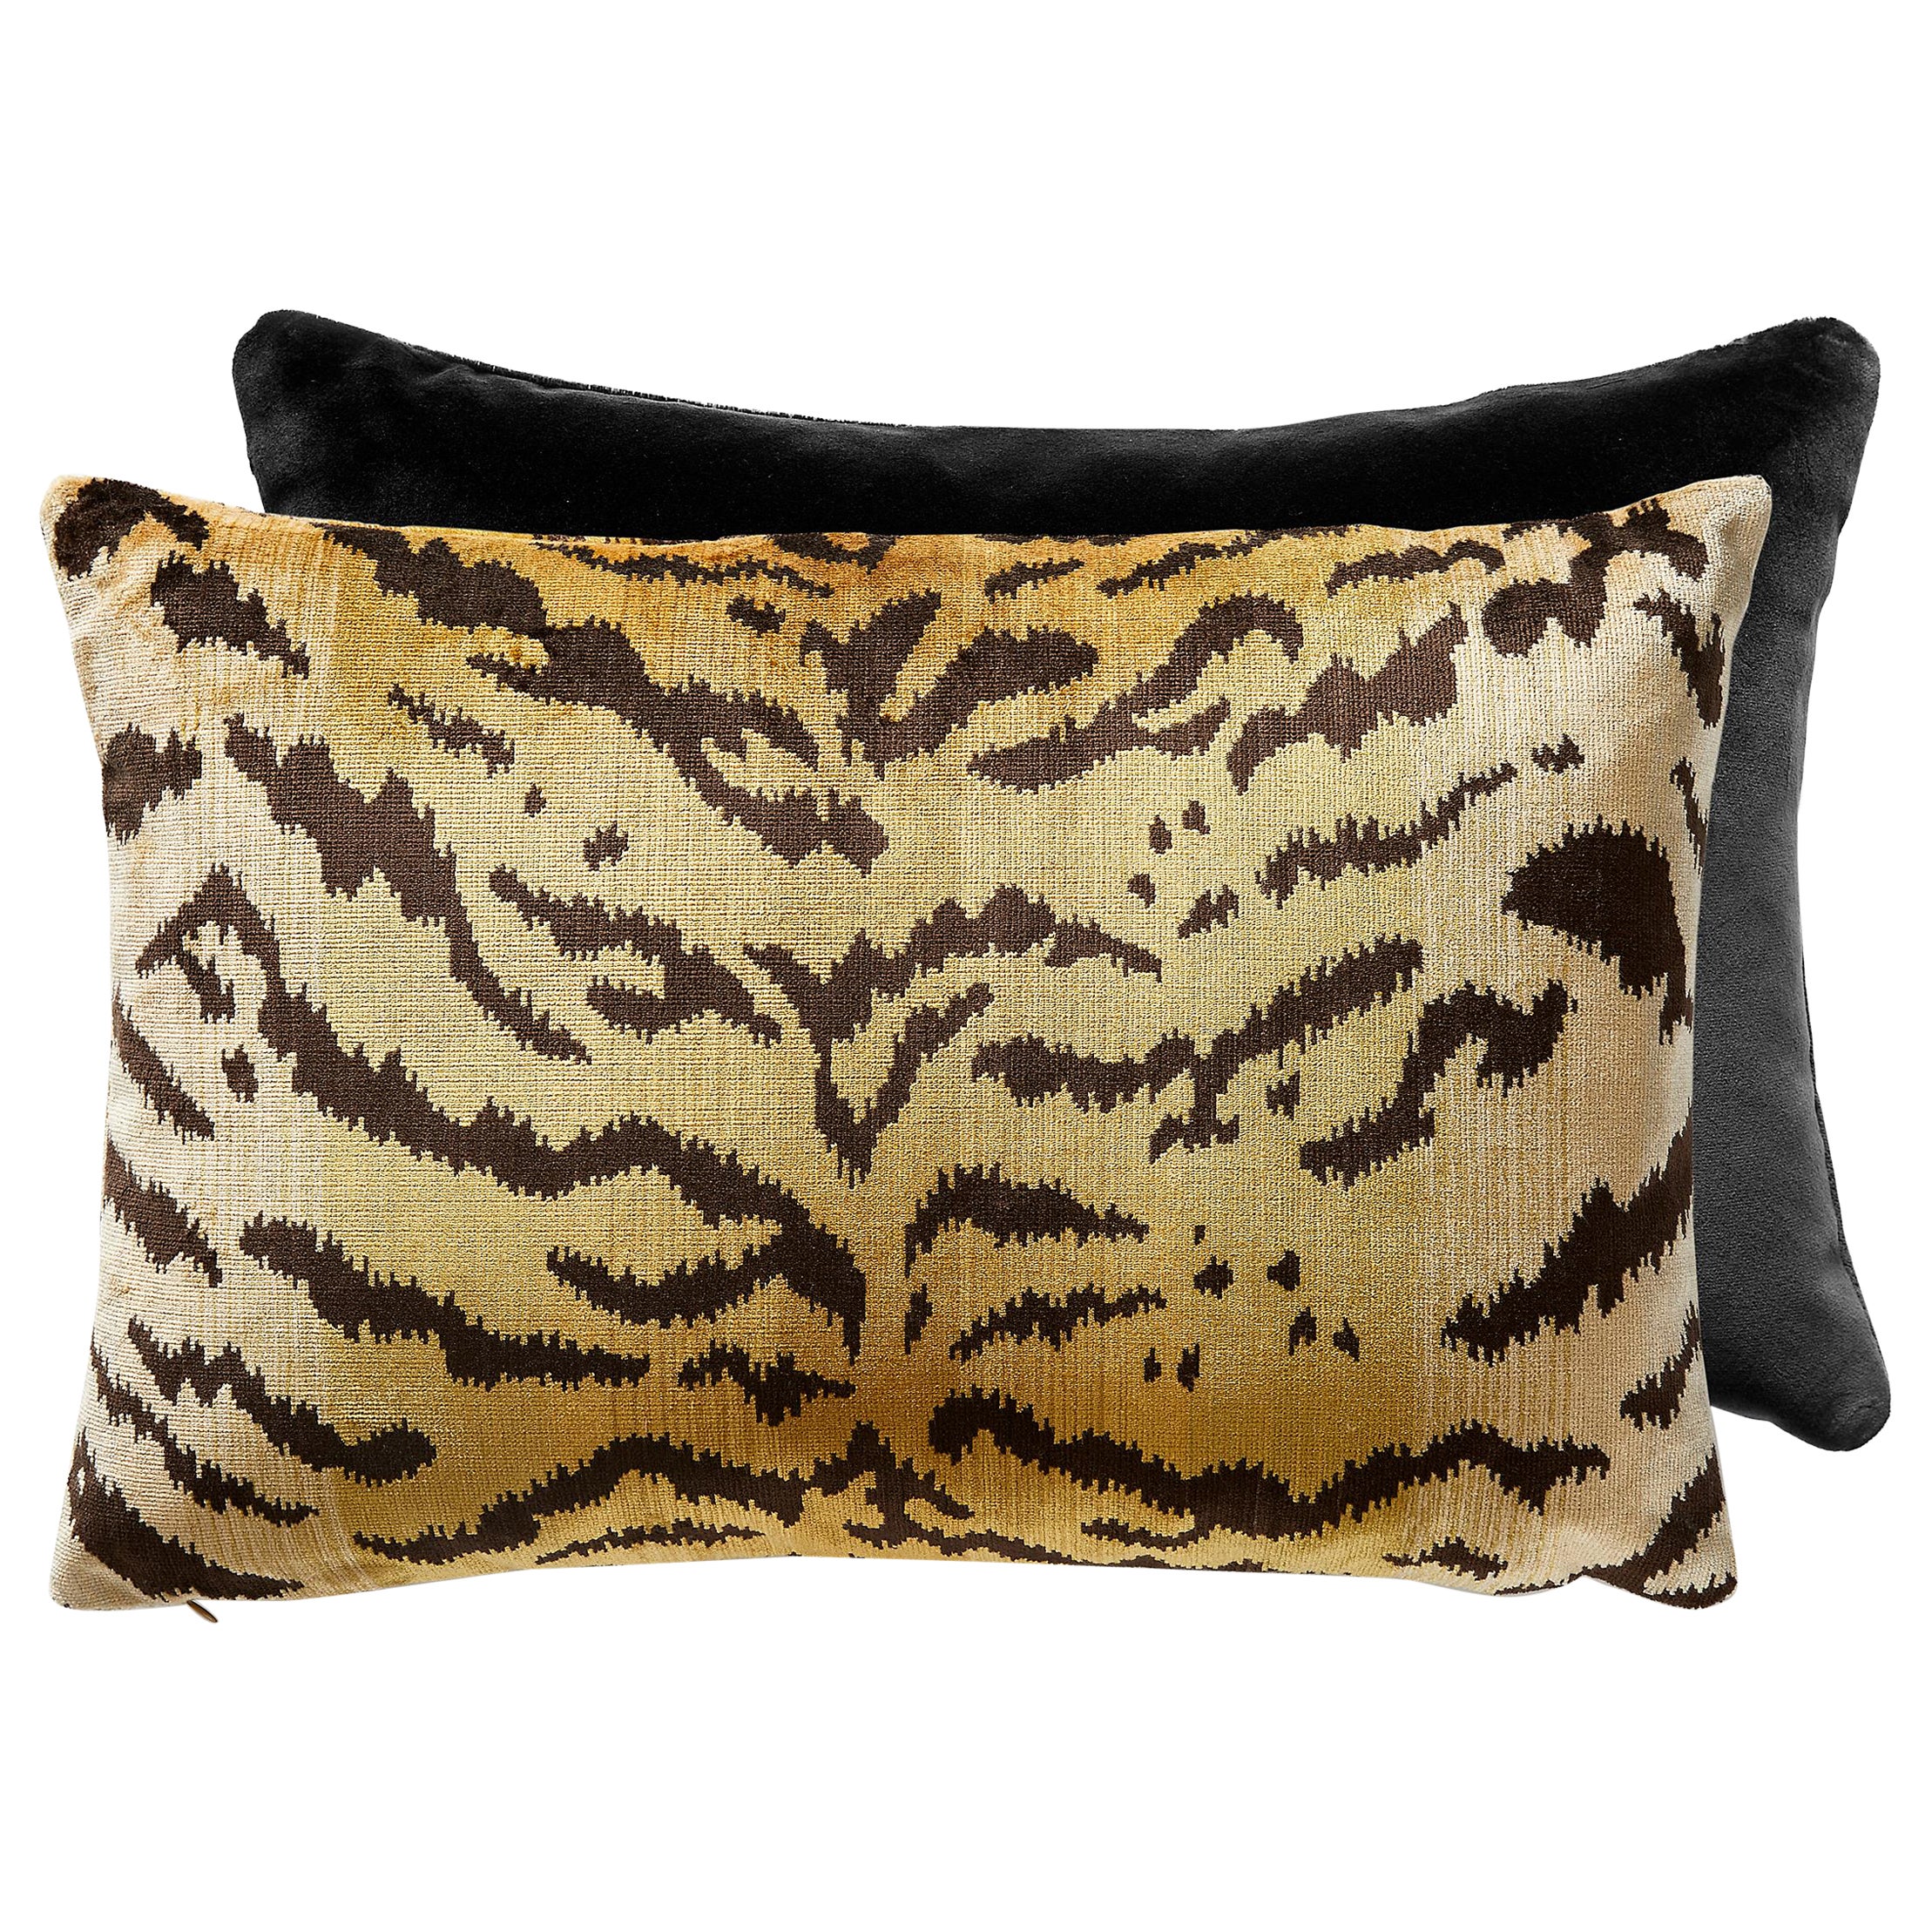 Tigre/Indus Lumbar Pillow For Sale